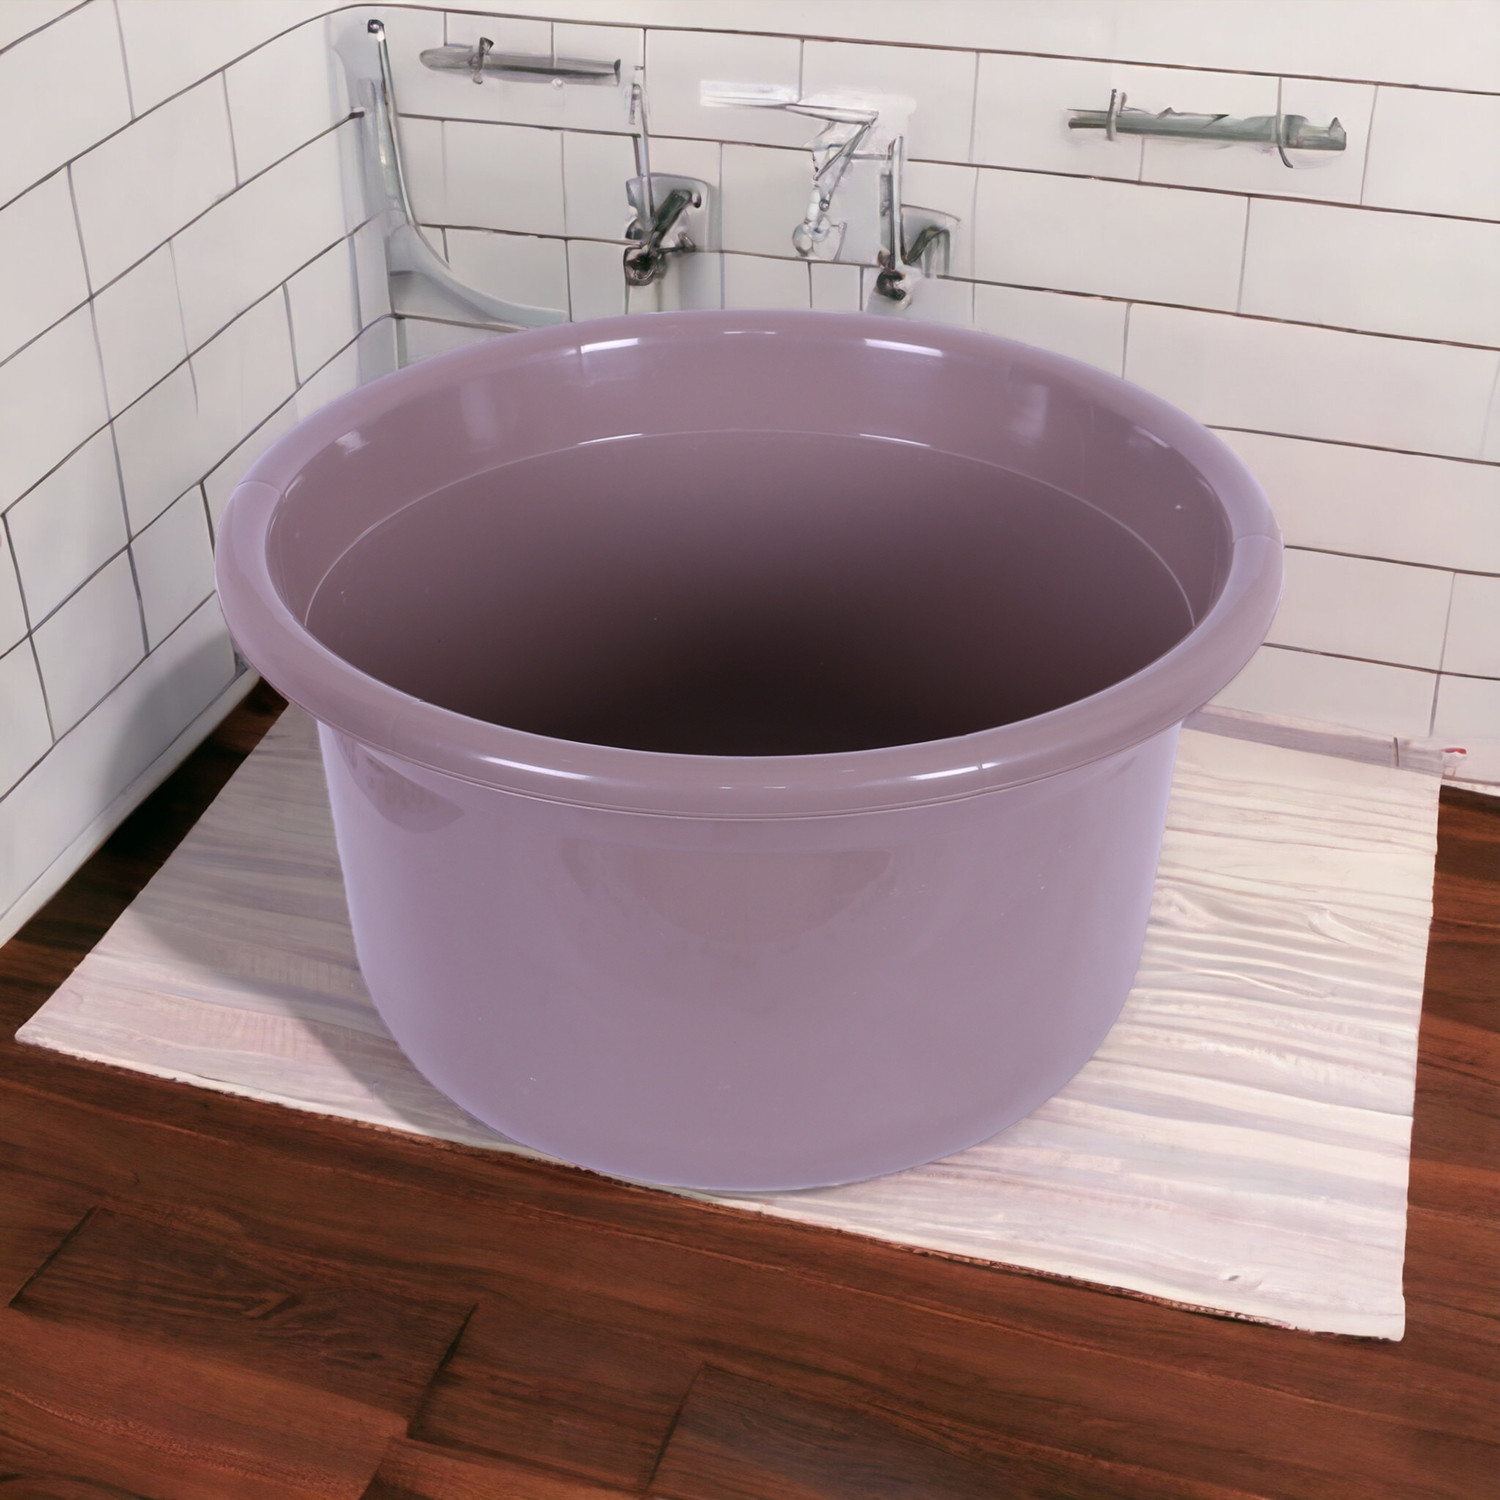 Kuber Industries Bath Tub | Versatile Utility Gaint Tub | Plastic Bath Tub for Baby | Baby Bathing Tub | Clothes Washing Tub For Bathroom | Feeding Pan Tub | TUB-25 LTR | Pack of 2 | Multi